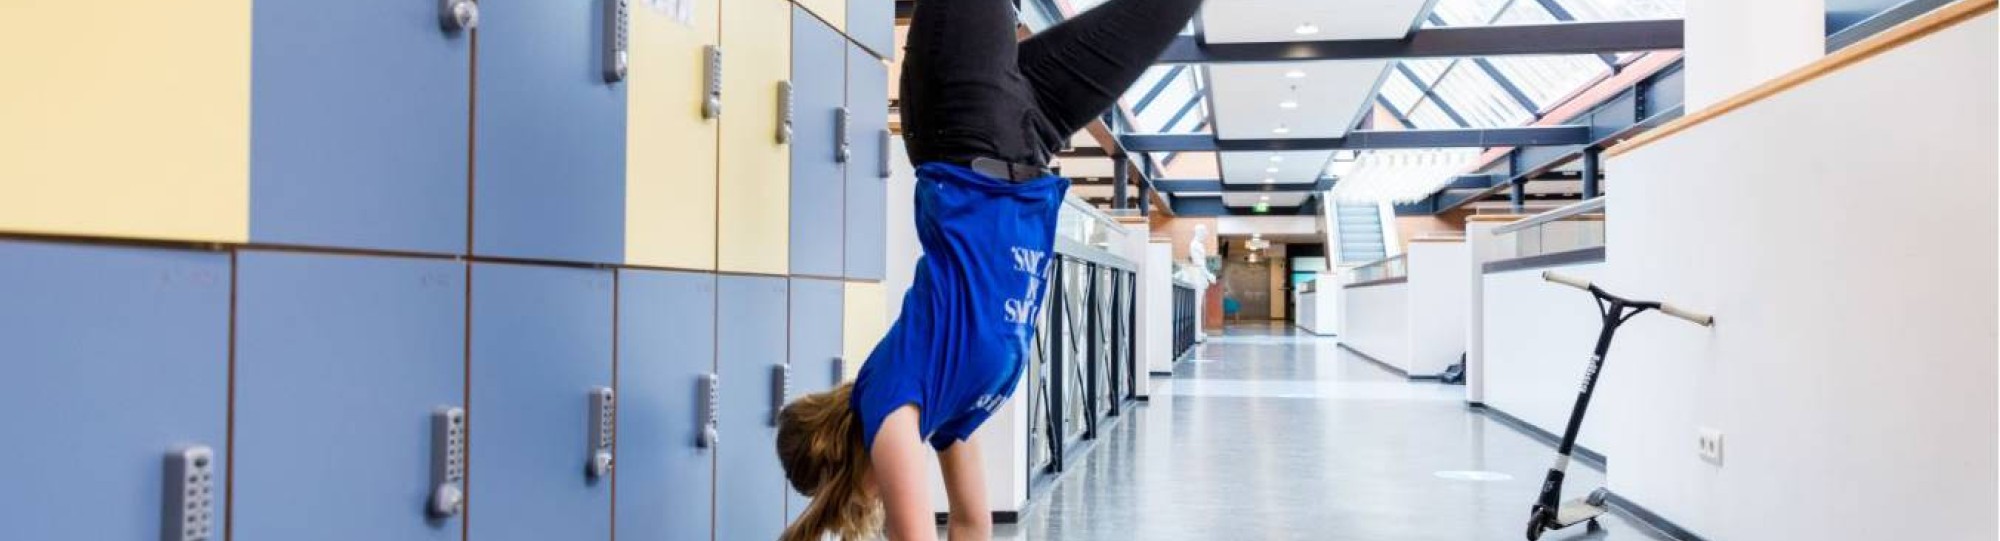 foto van Meike Geurtsen, student. Ze doet de handstand. Geplaatst door Rob van den Broek.